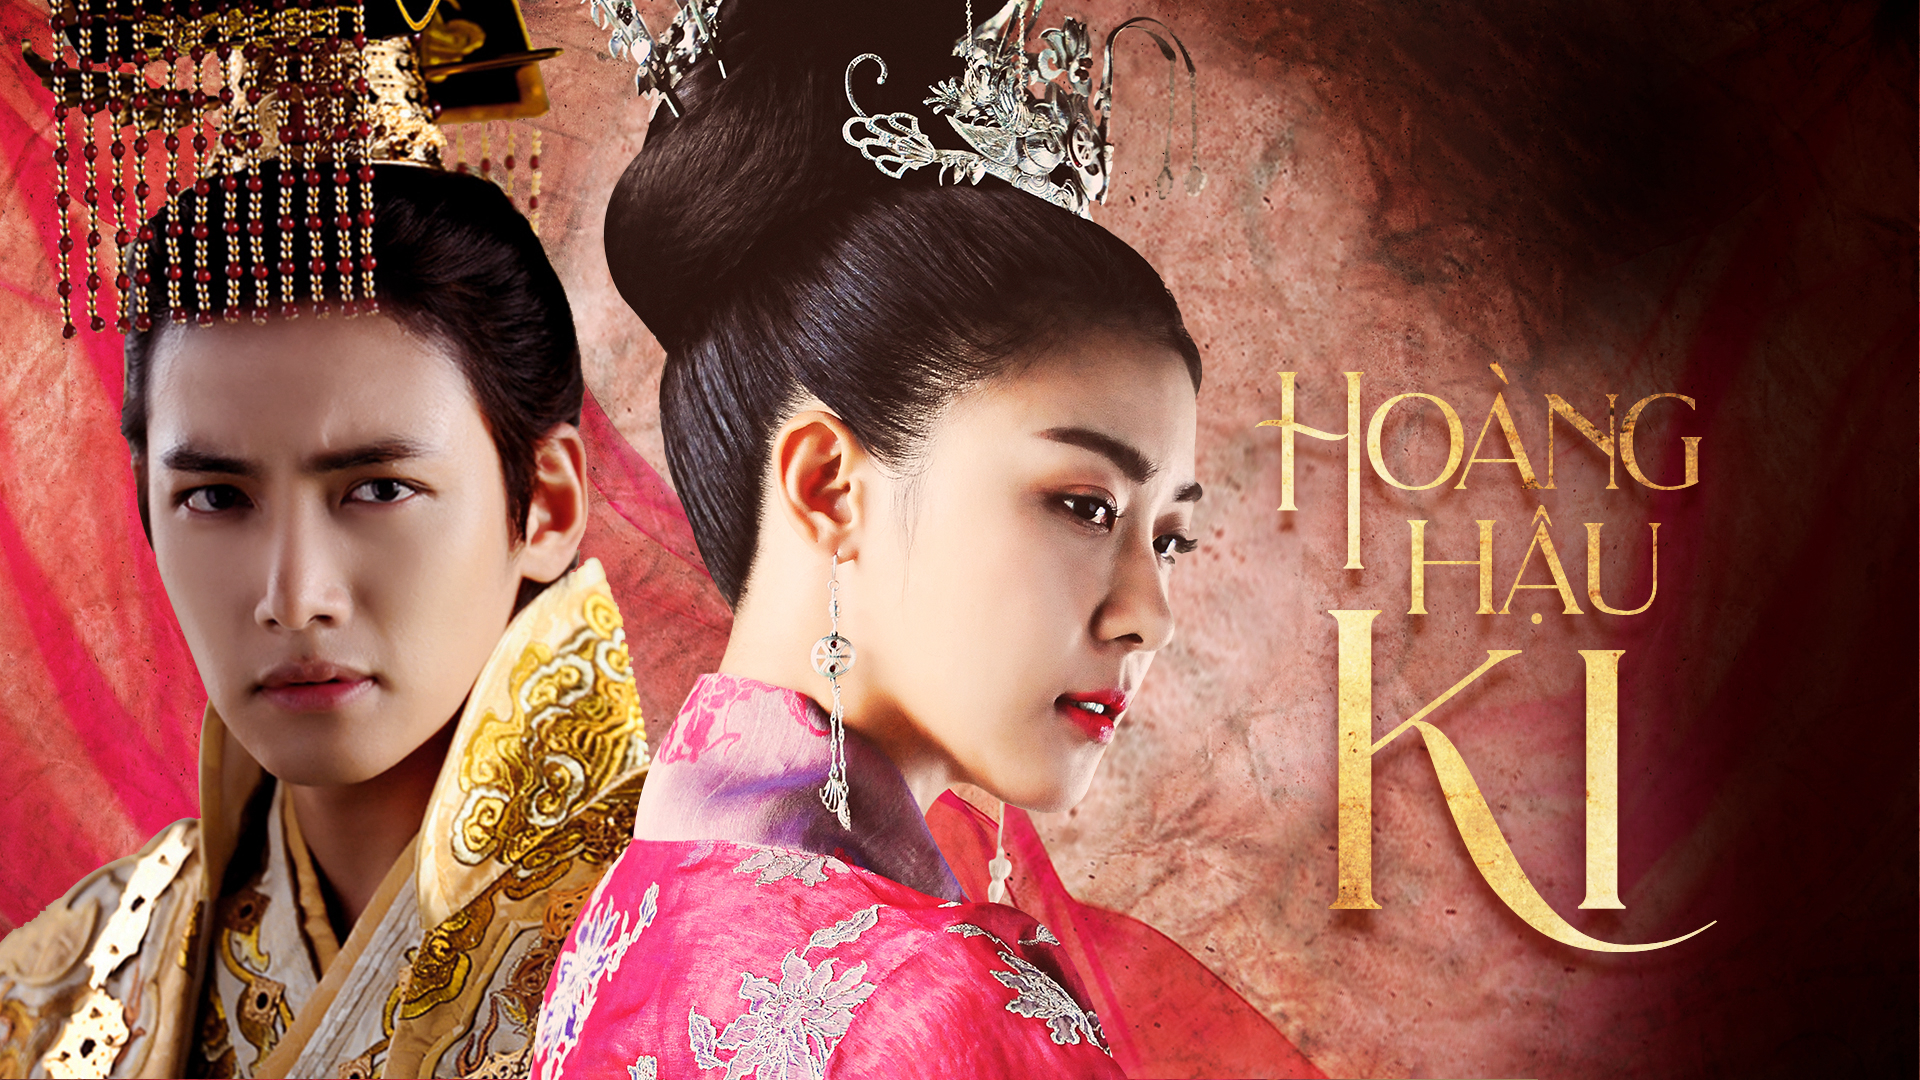 Hoàng hậu Ki - The Empress Kia (2013)